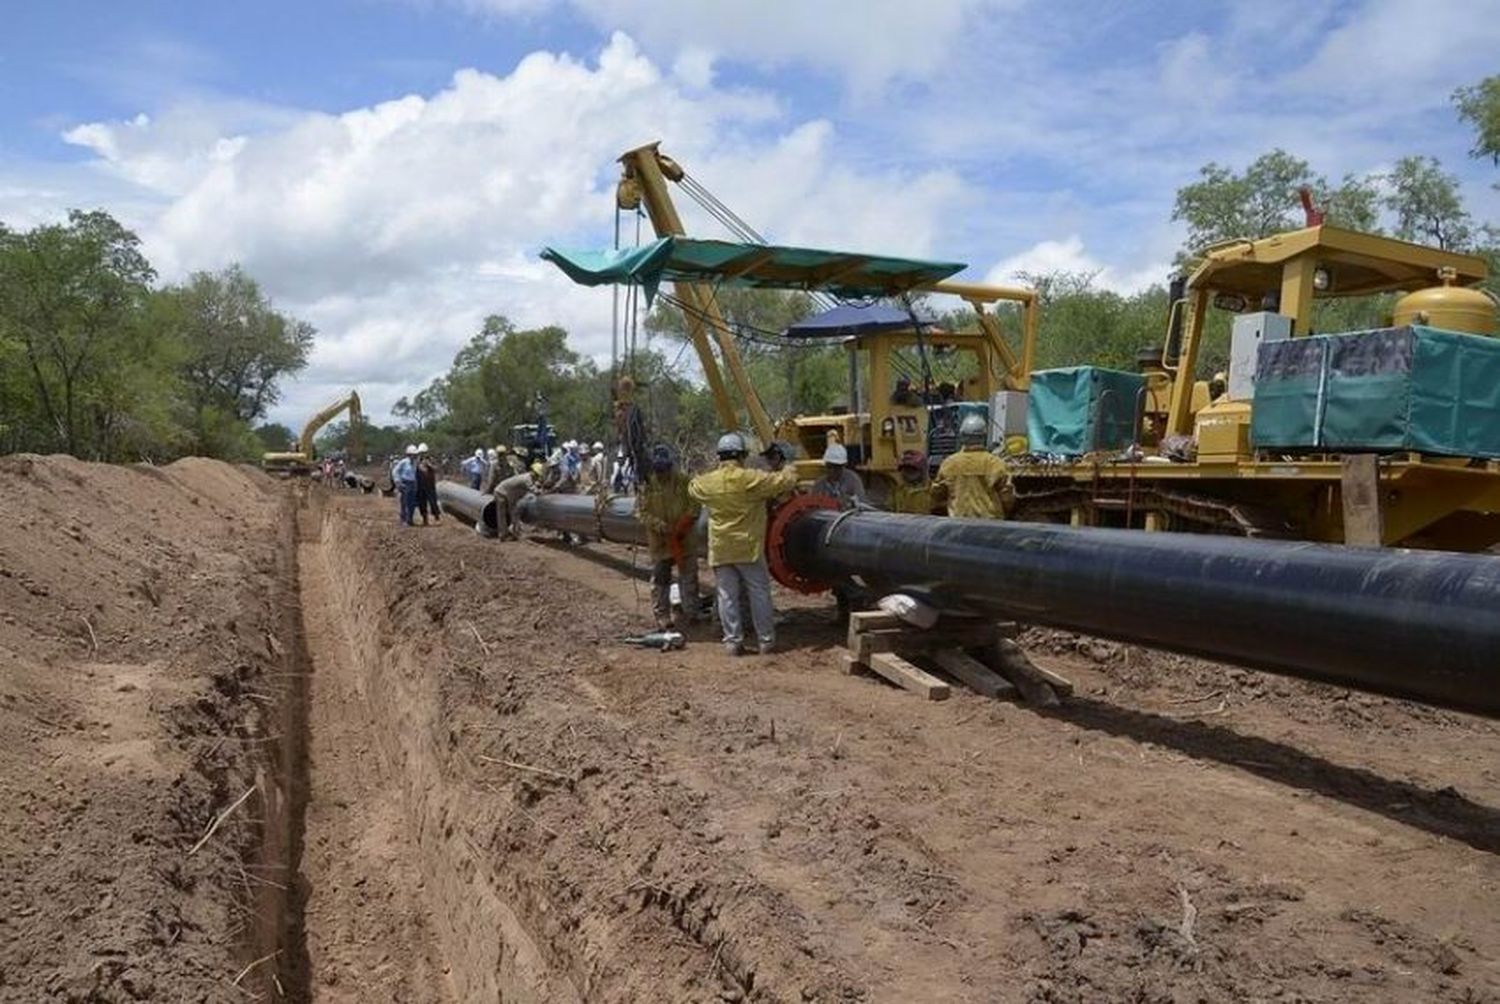 “La reactivación del gasoducto incentivará el desarrollo económico y social de la región”